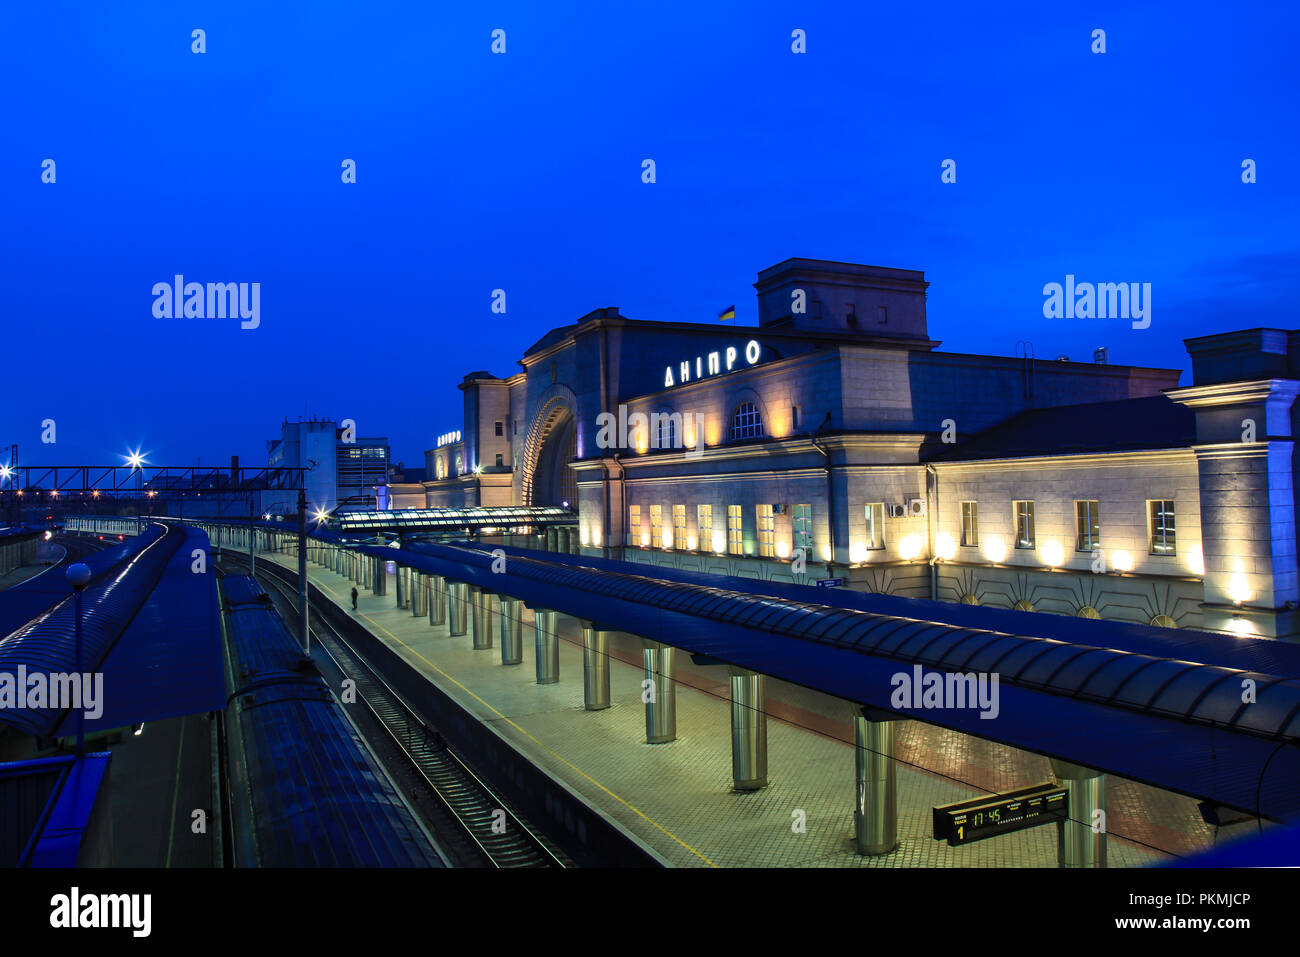 La plate-forme et la construction de la gare avec l'inscription "nipro' dans la ville de Dnipropetrovsk dans la nuit. Dnepr, Wien, Autriche Banque D'Images